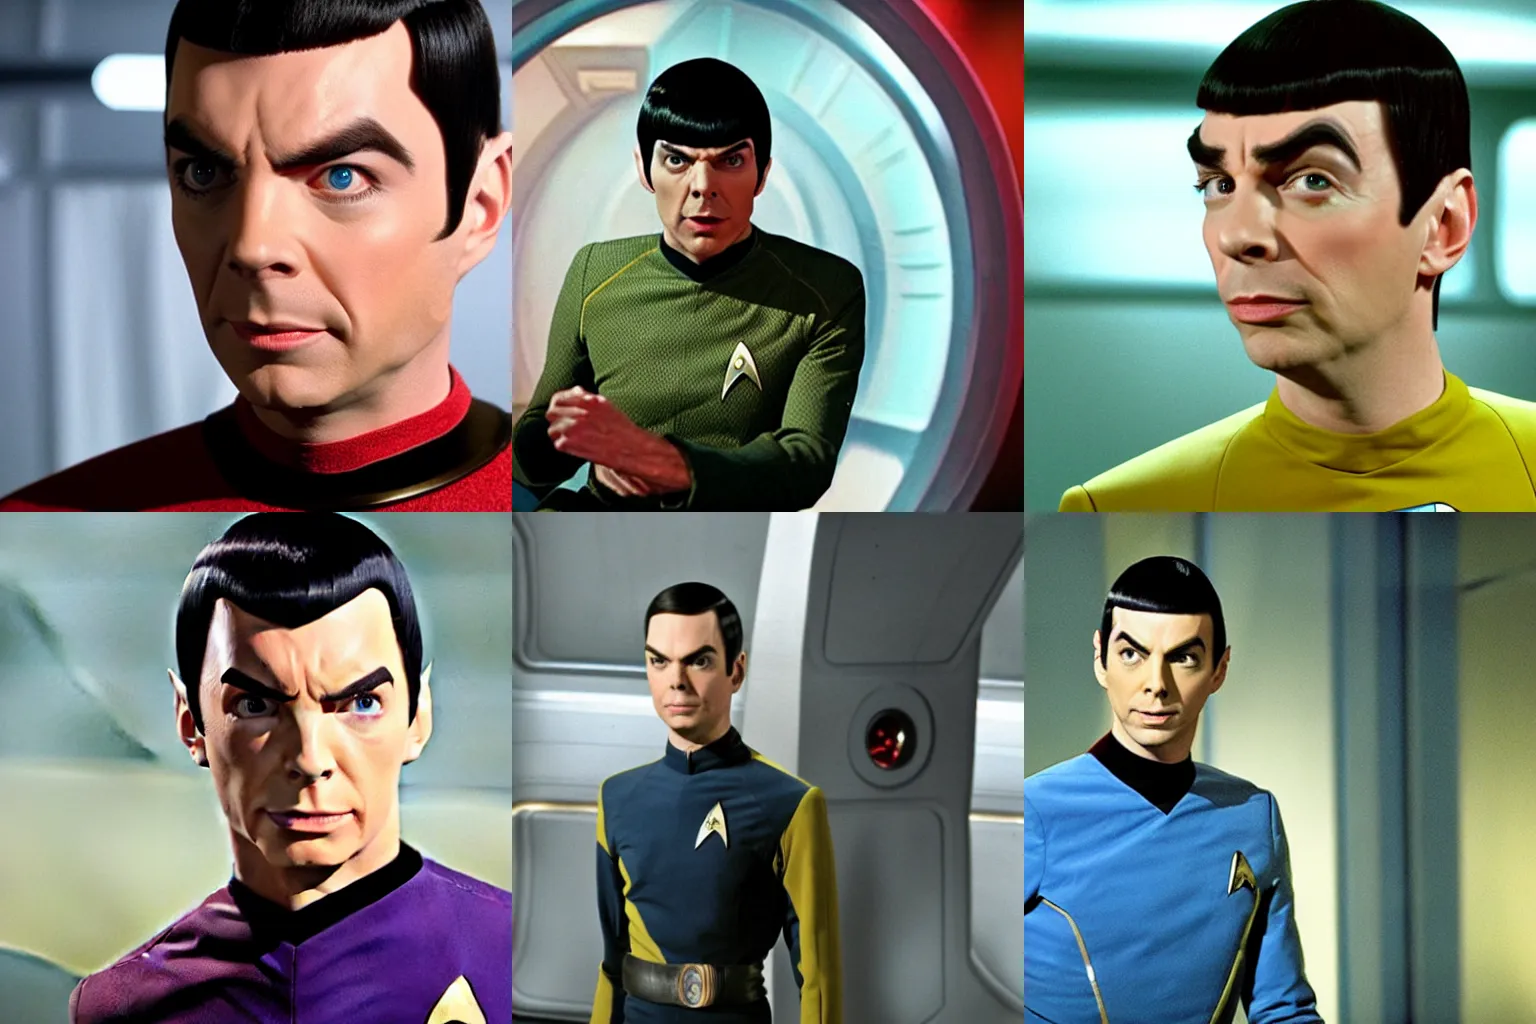 Prompt: Jim Parsons as Spock, star trek original series